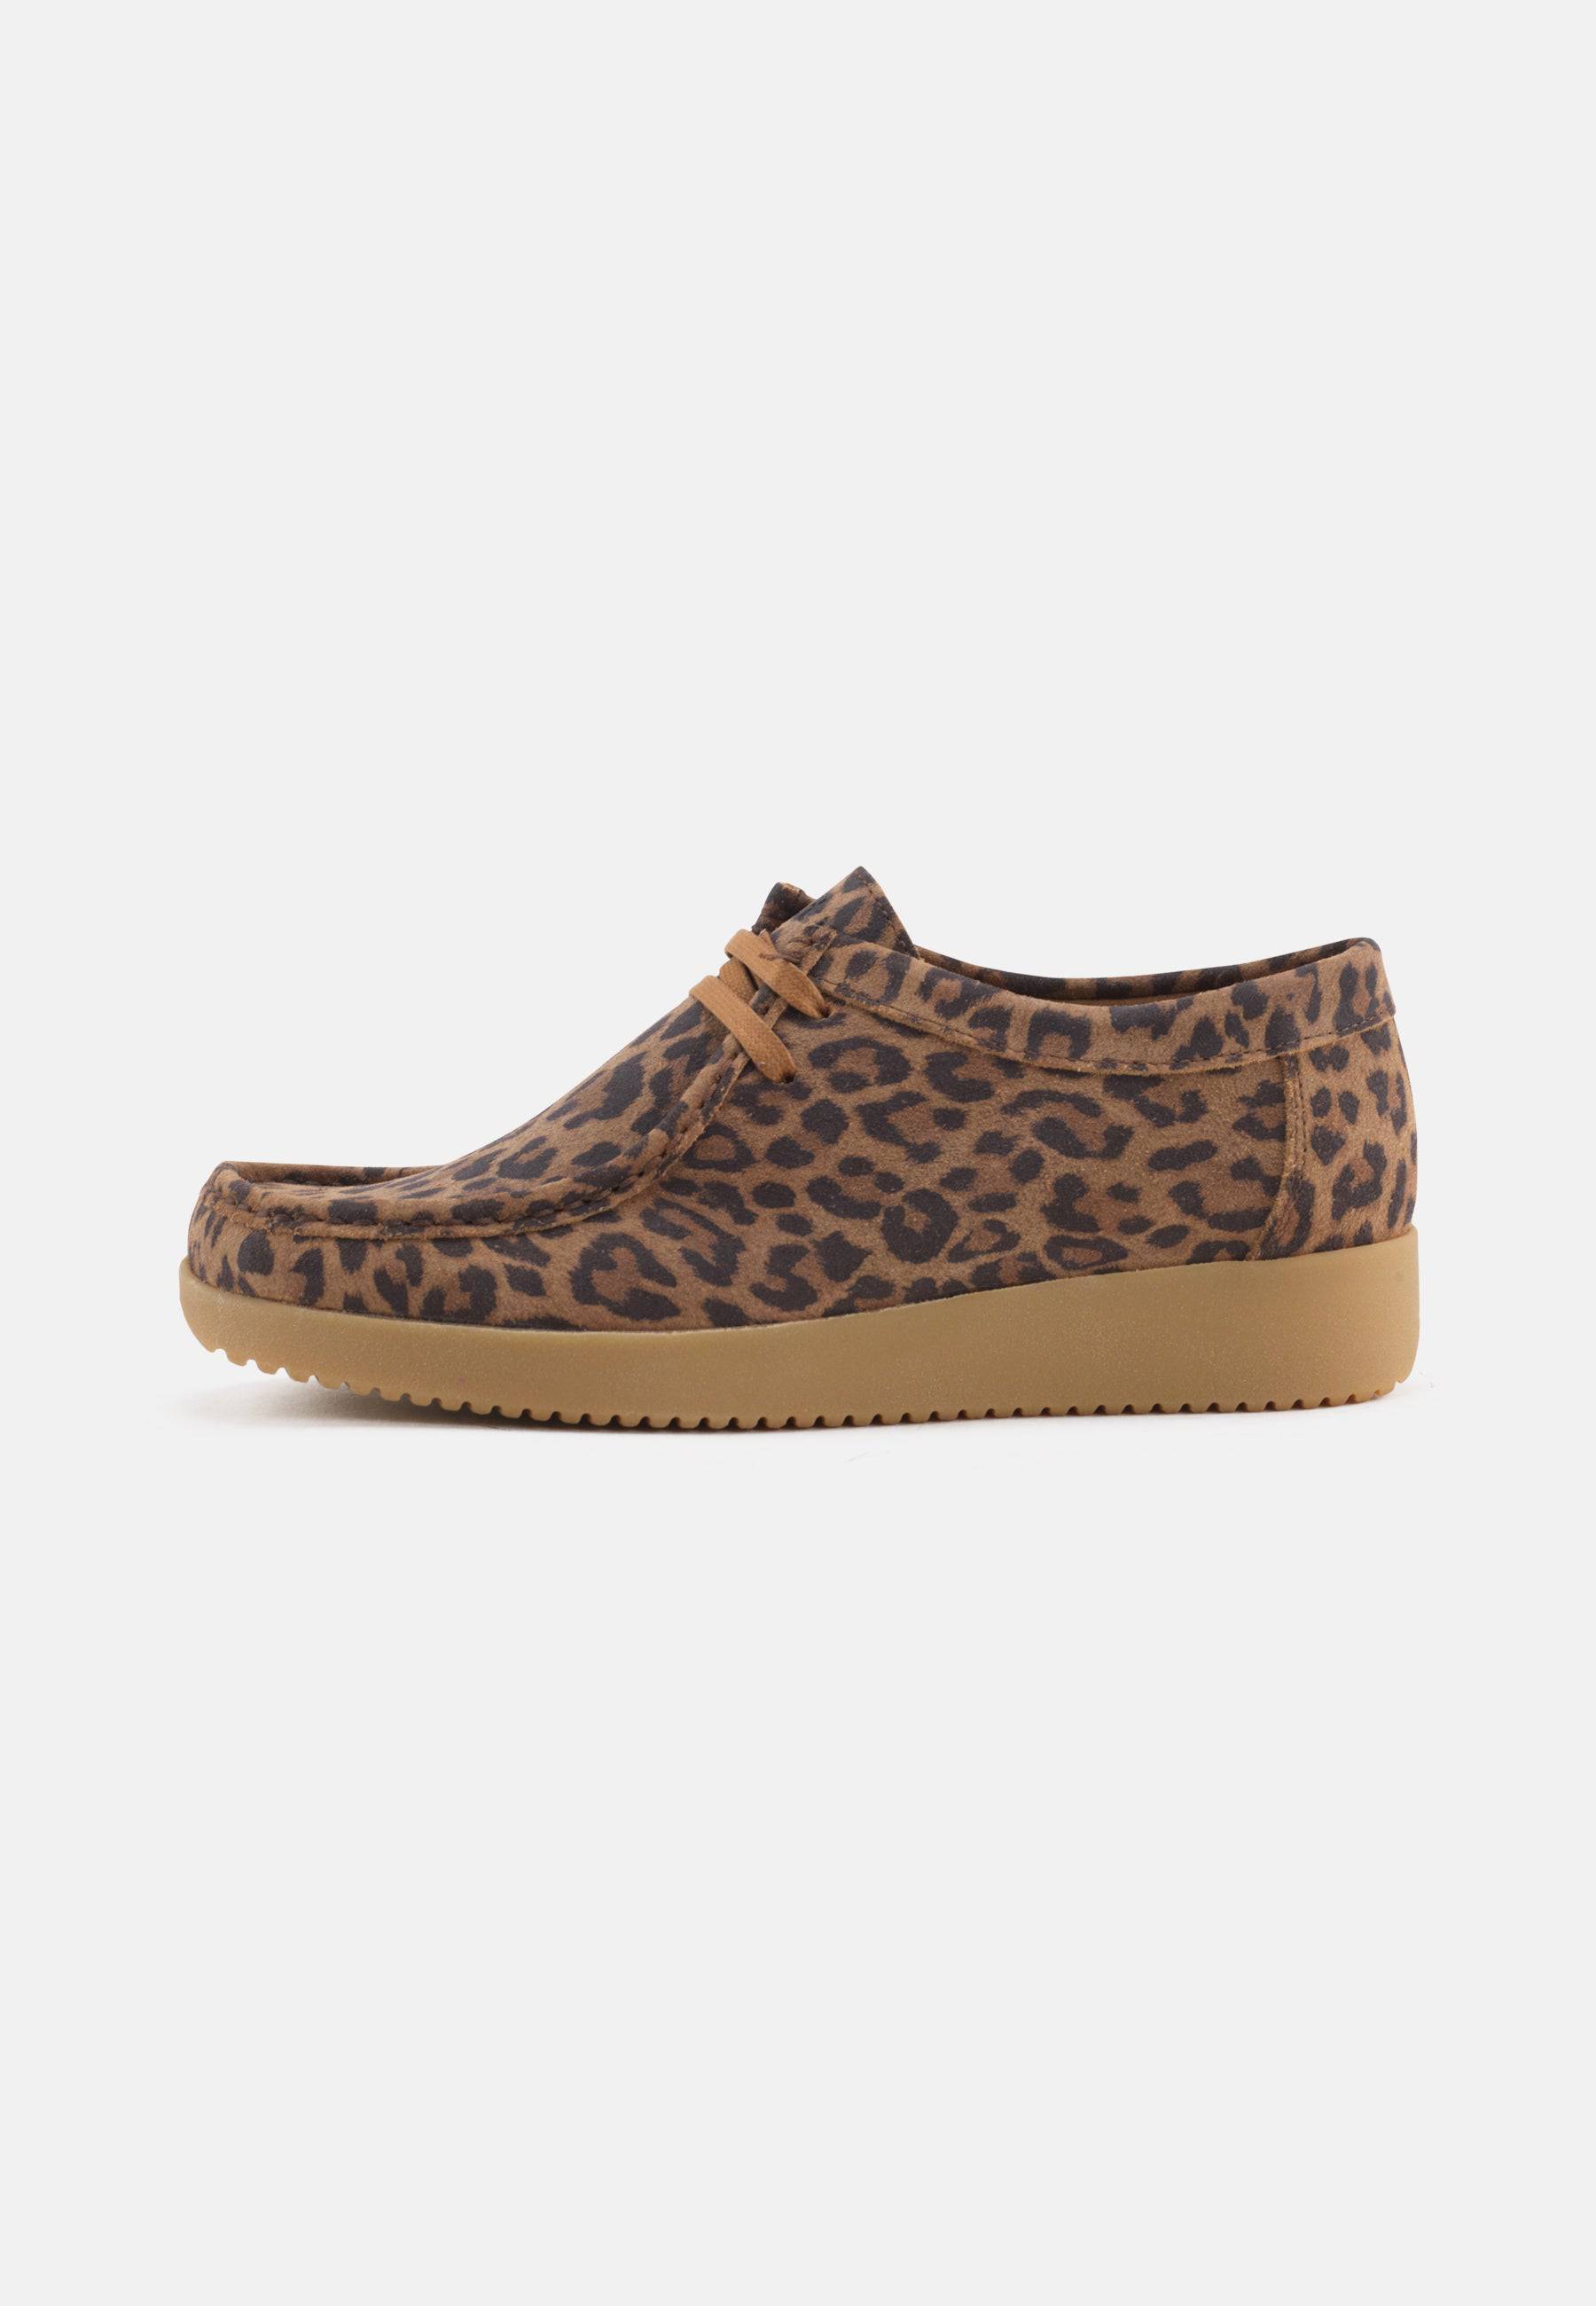 Alba Shoes Suede Print - Leopard